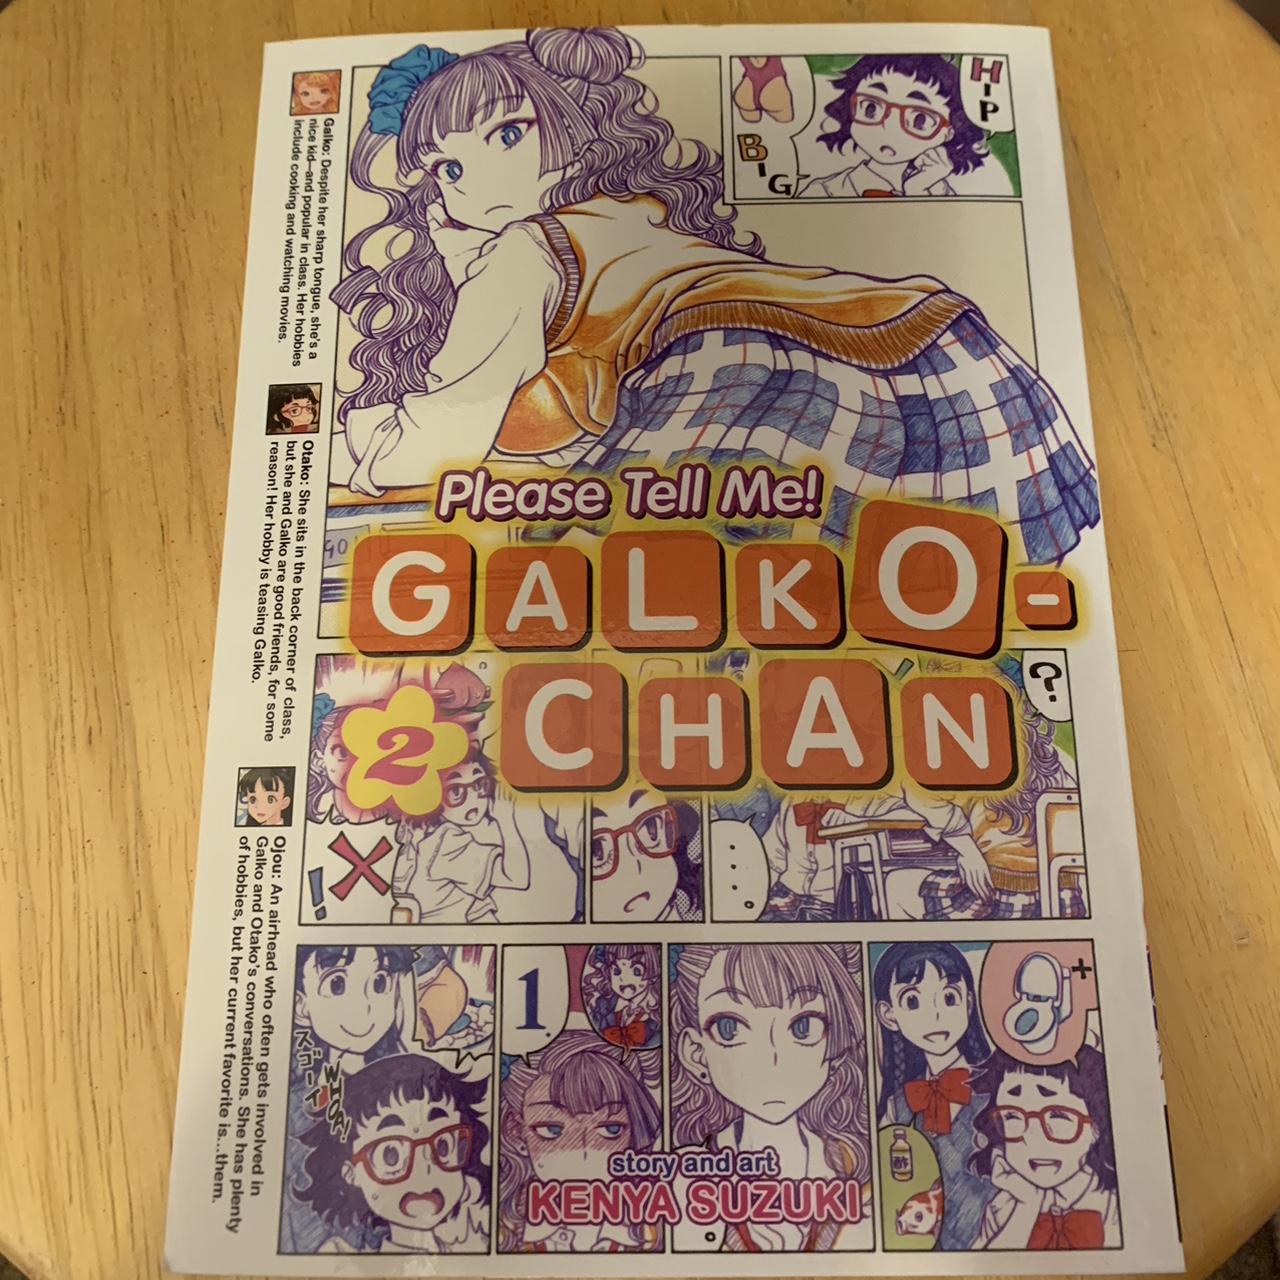 Please Tell Me! Galko-chan Vol. 1 (Please Tell Me! Galko-chan, 1